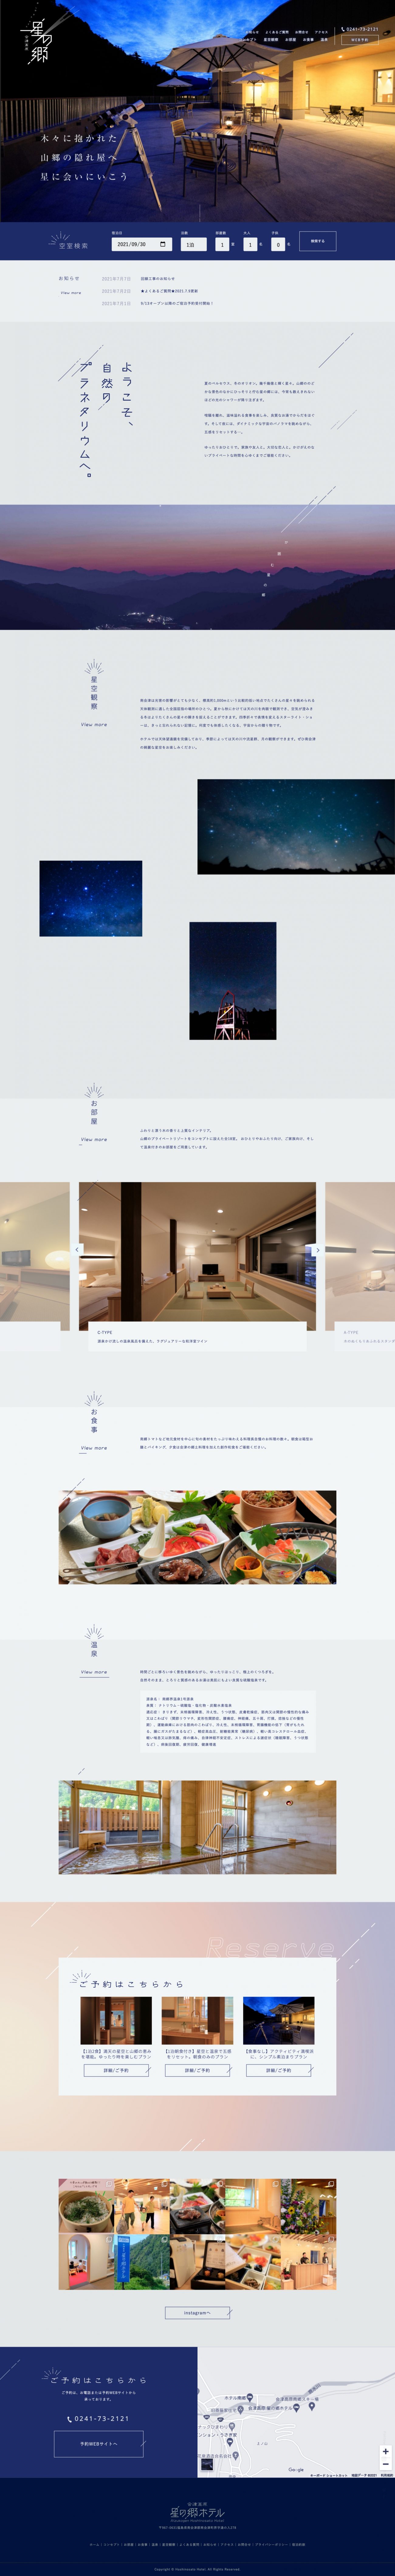 会津高原 星の郷ホテルの画像